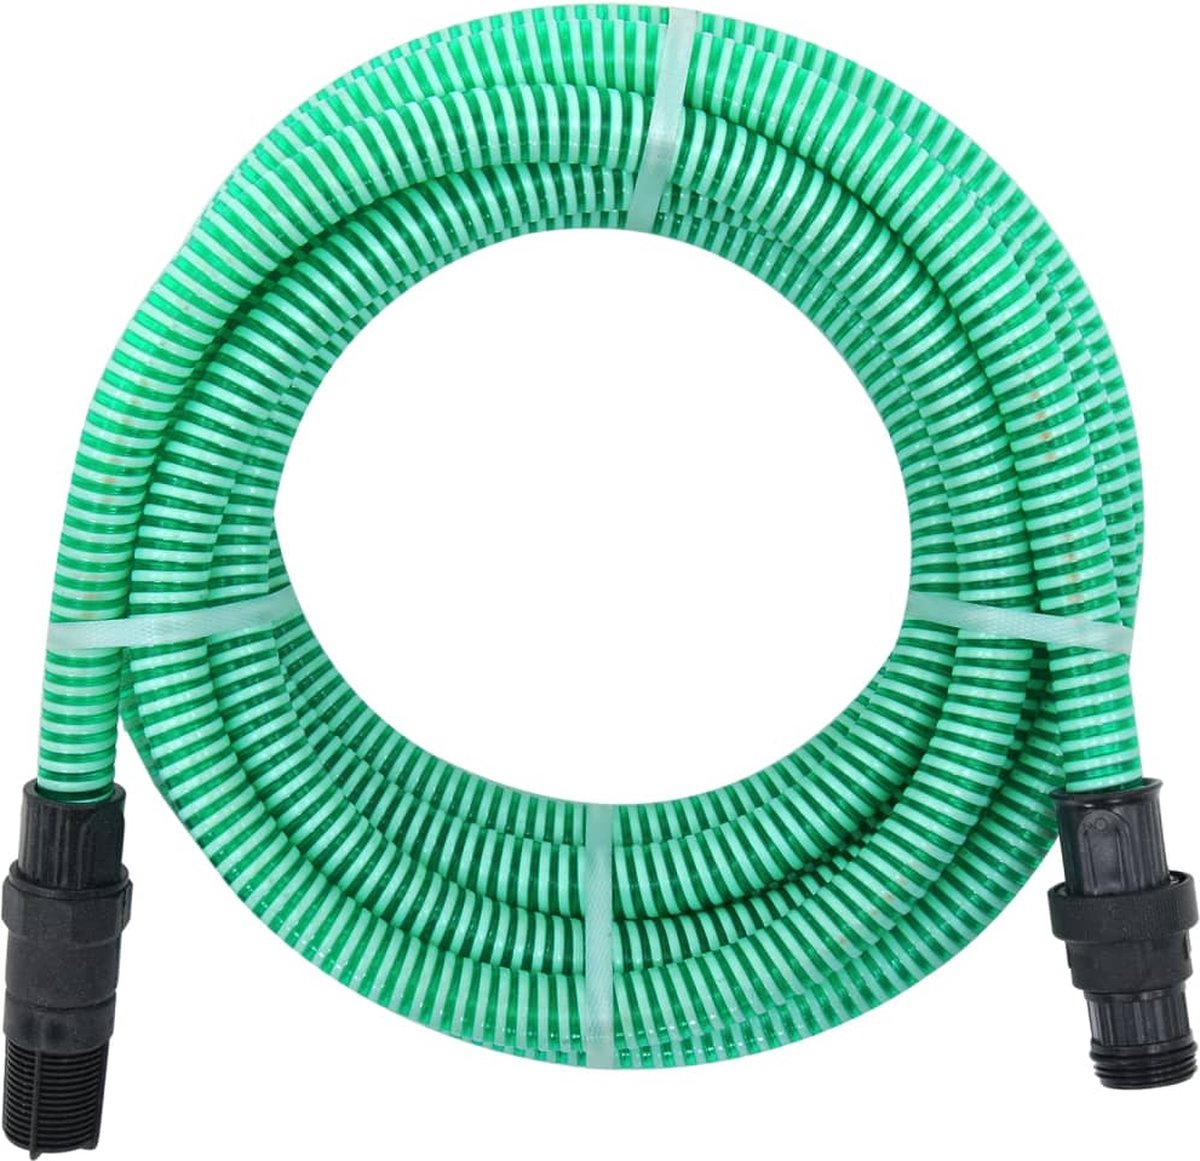 VidaLife Zuigslang met PVC koppelingen 7 m 22 mm groen